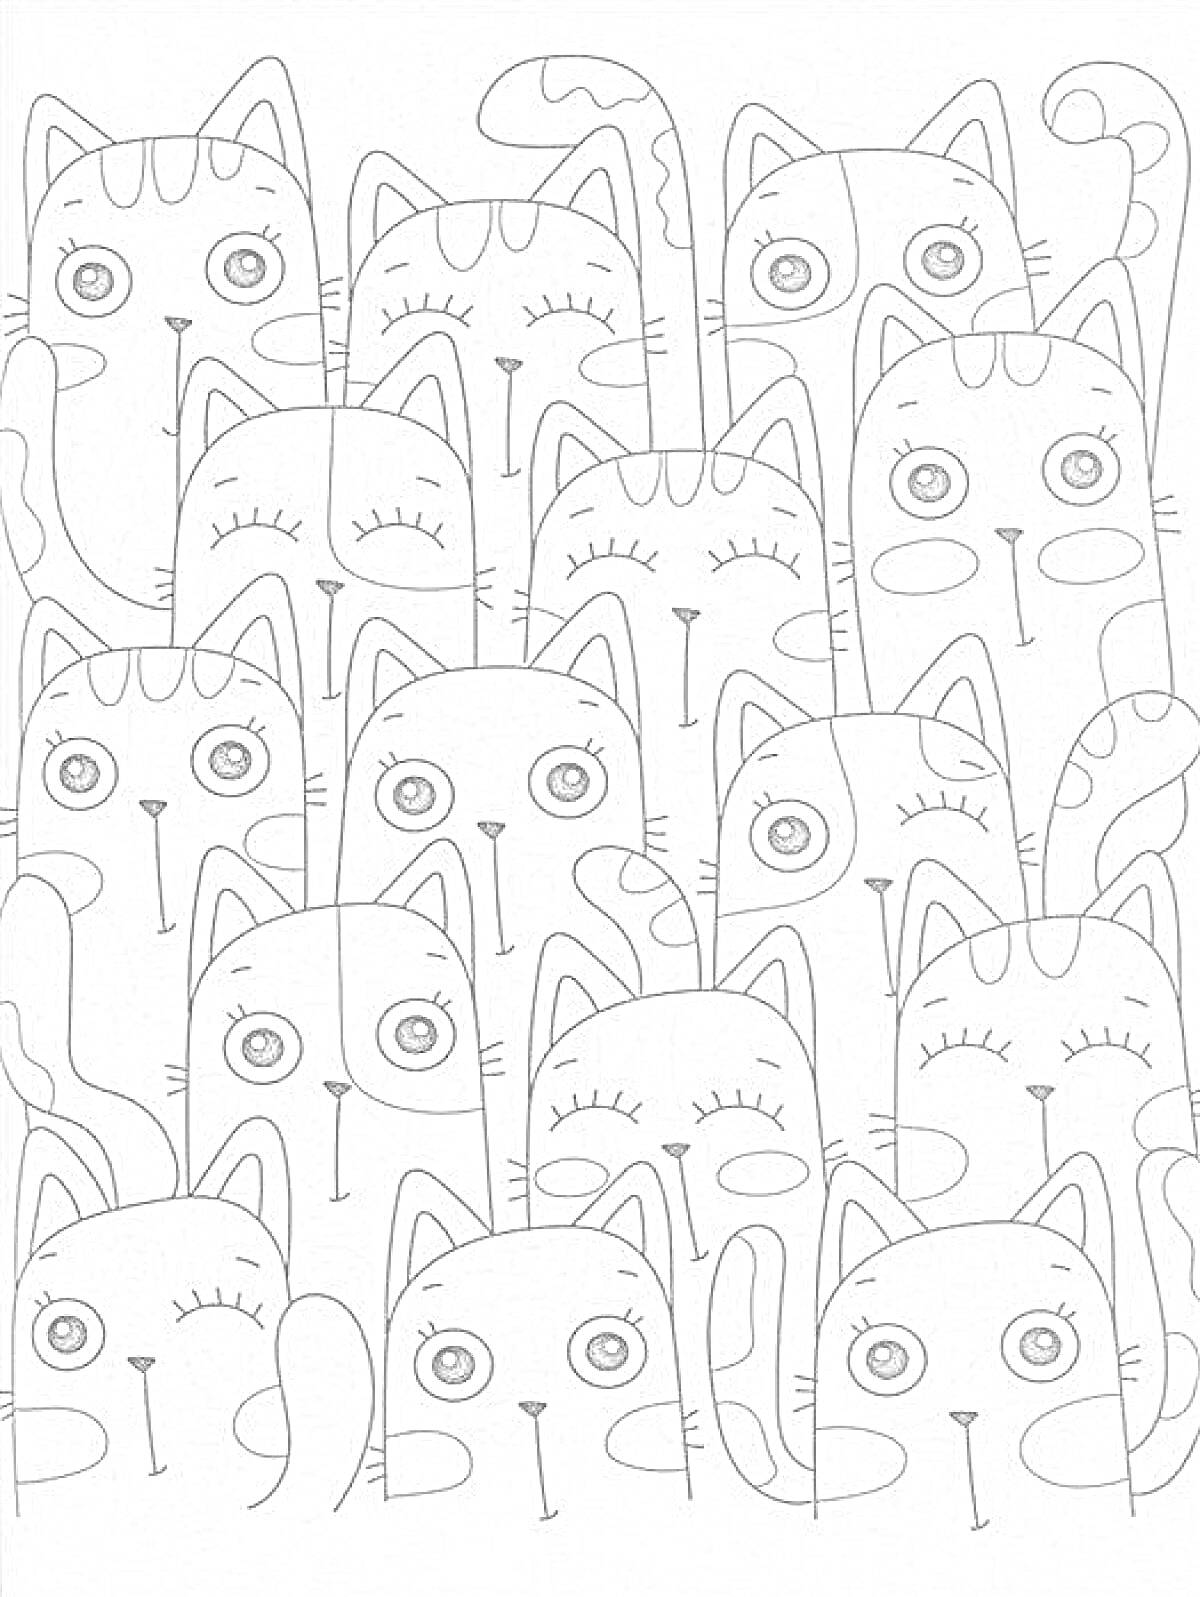 Раскраска Кошки с большими глазами и разными выражениями морд; стоящие плотно друг к другу с хвостами, поднятыми вверх